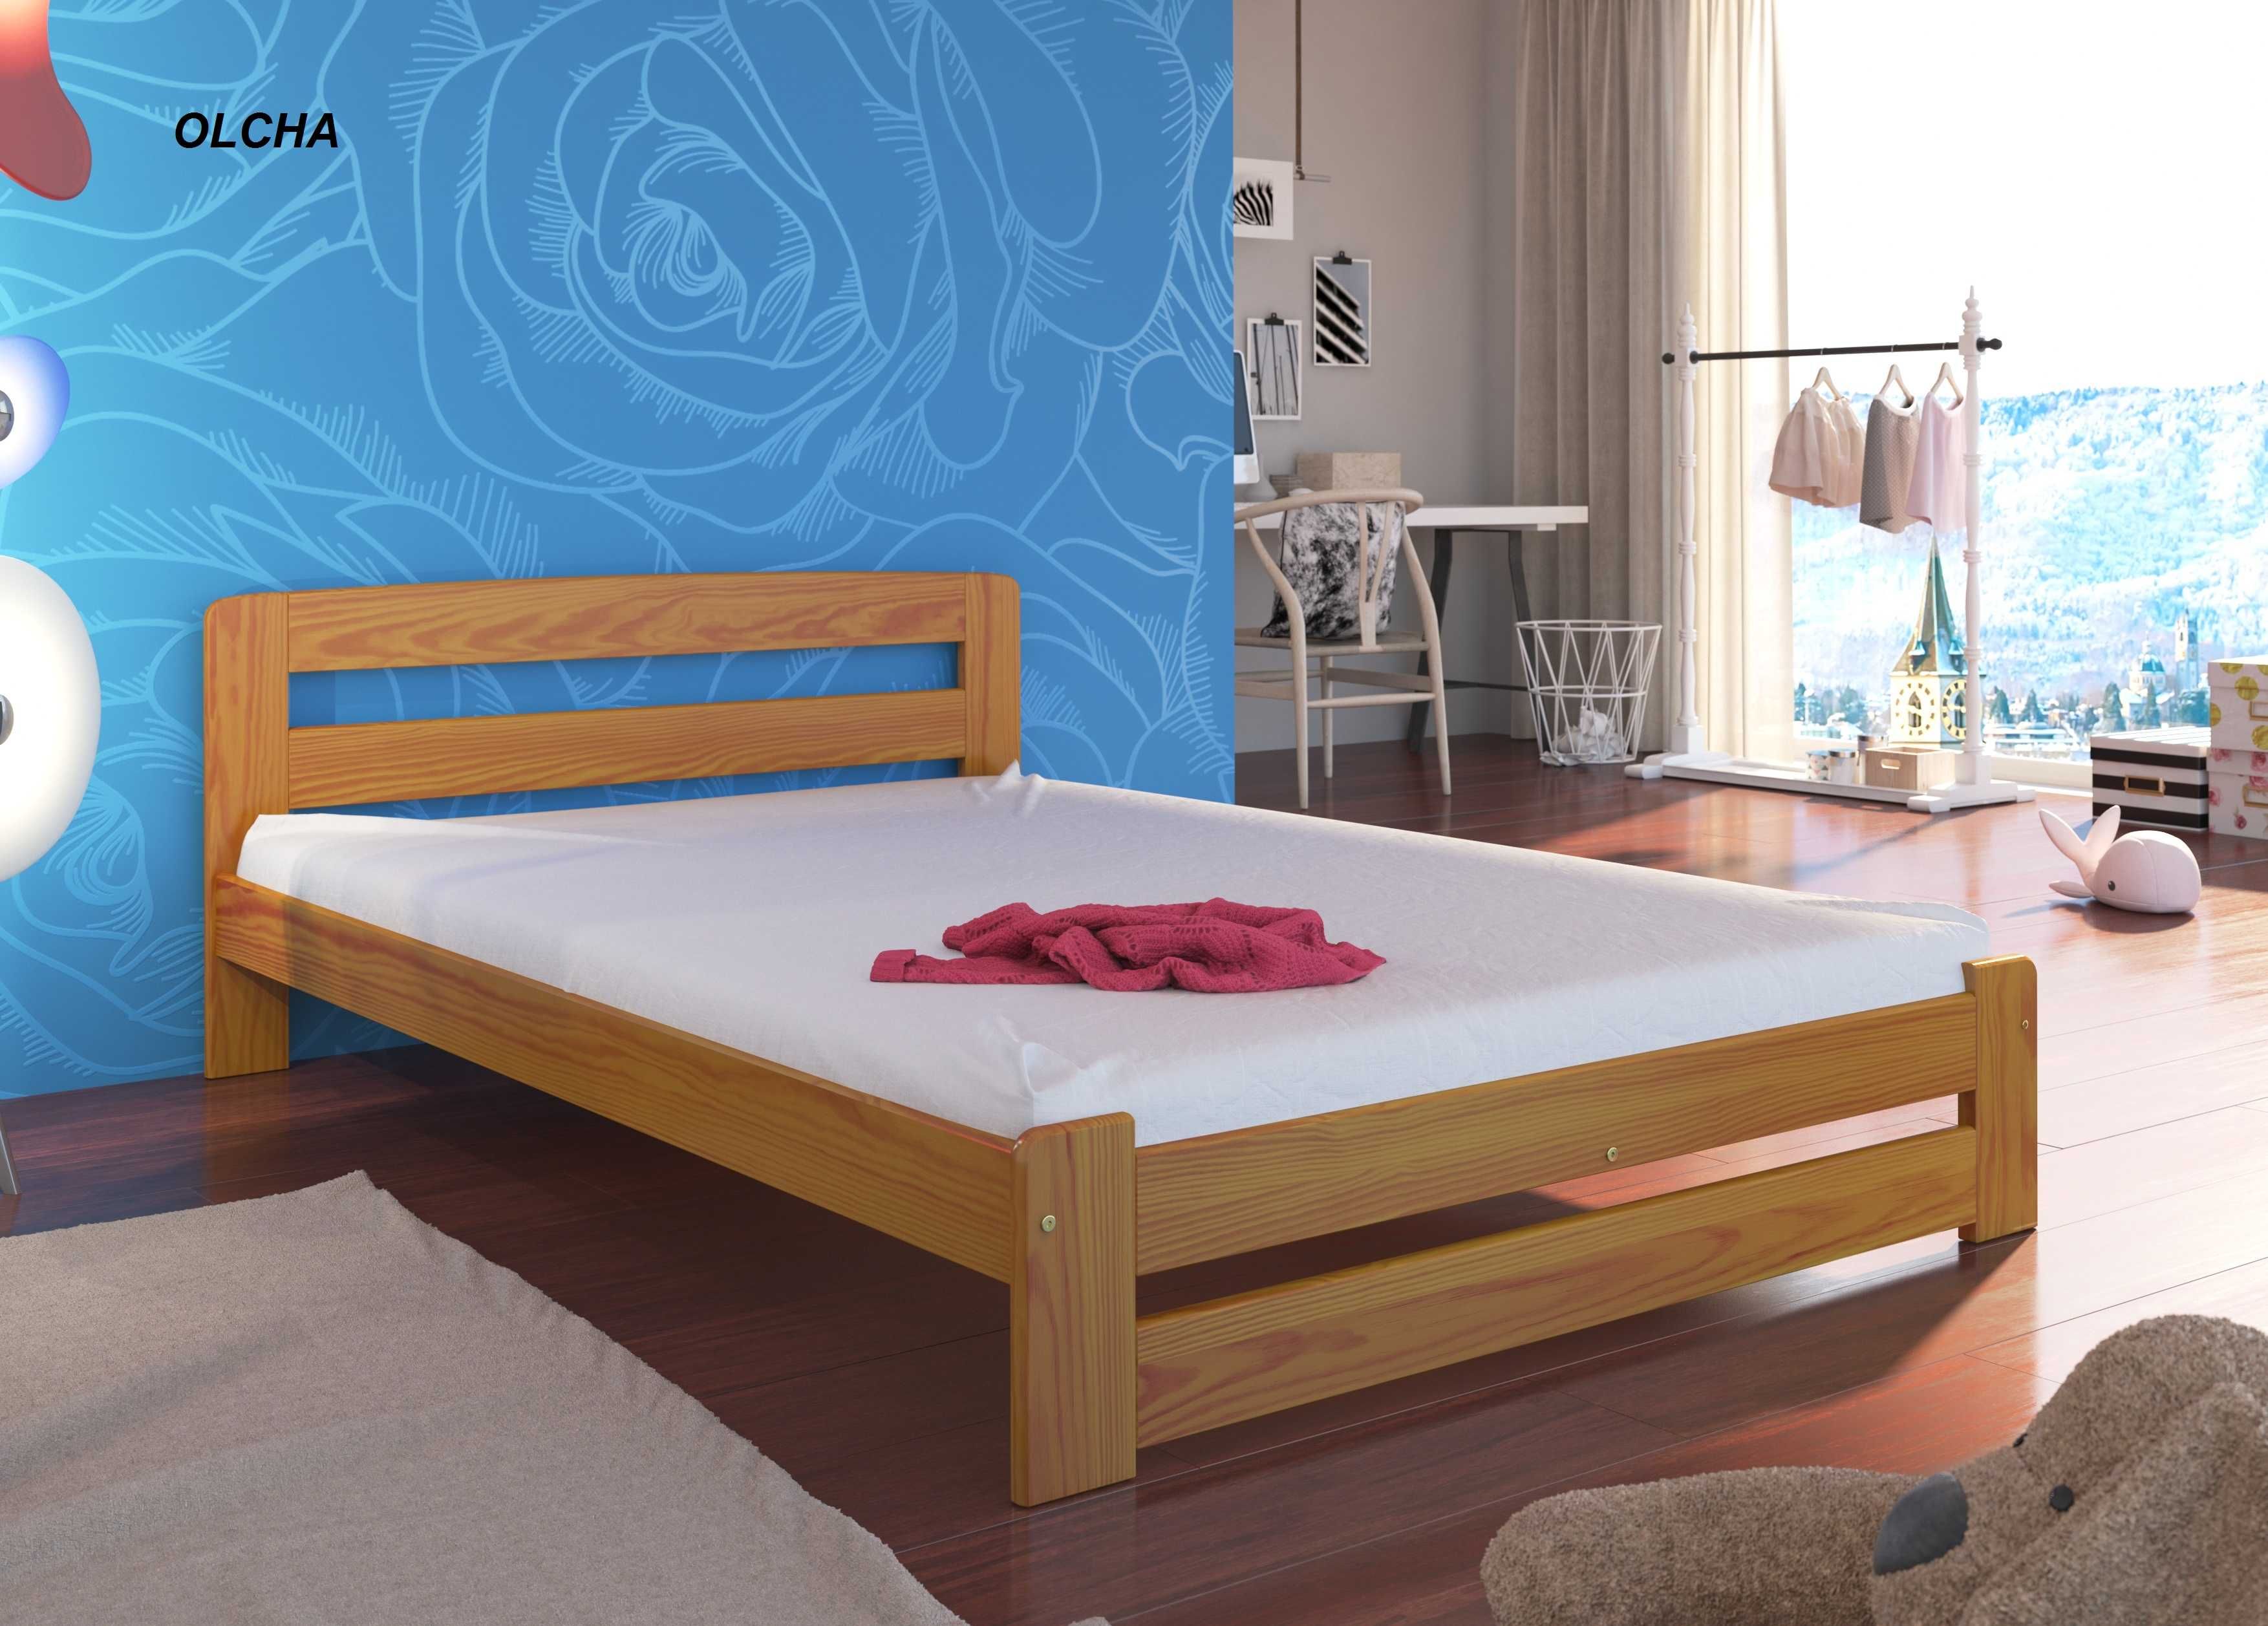 Kompletne łóżko sosnowe MODEL OLA producent Wymiary HIT DOSTAWA 4 dni